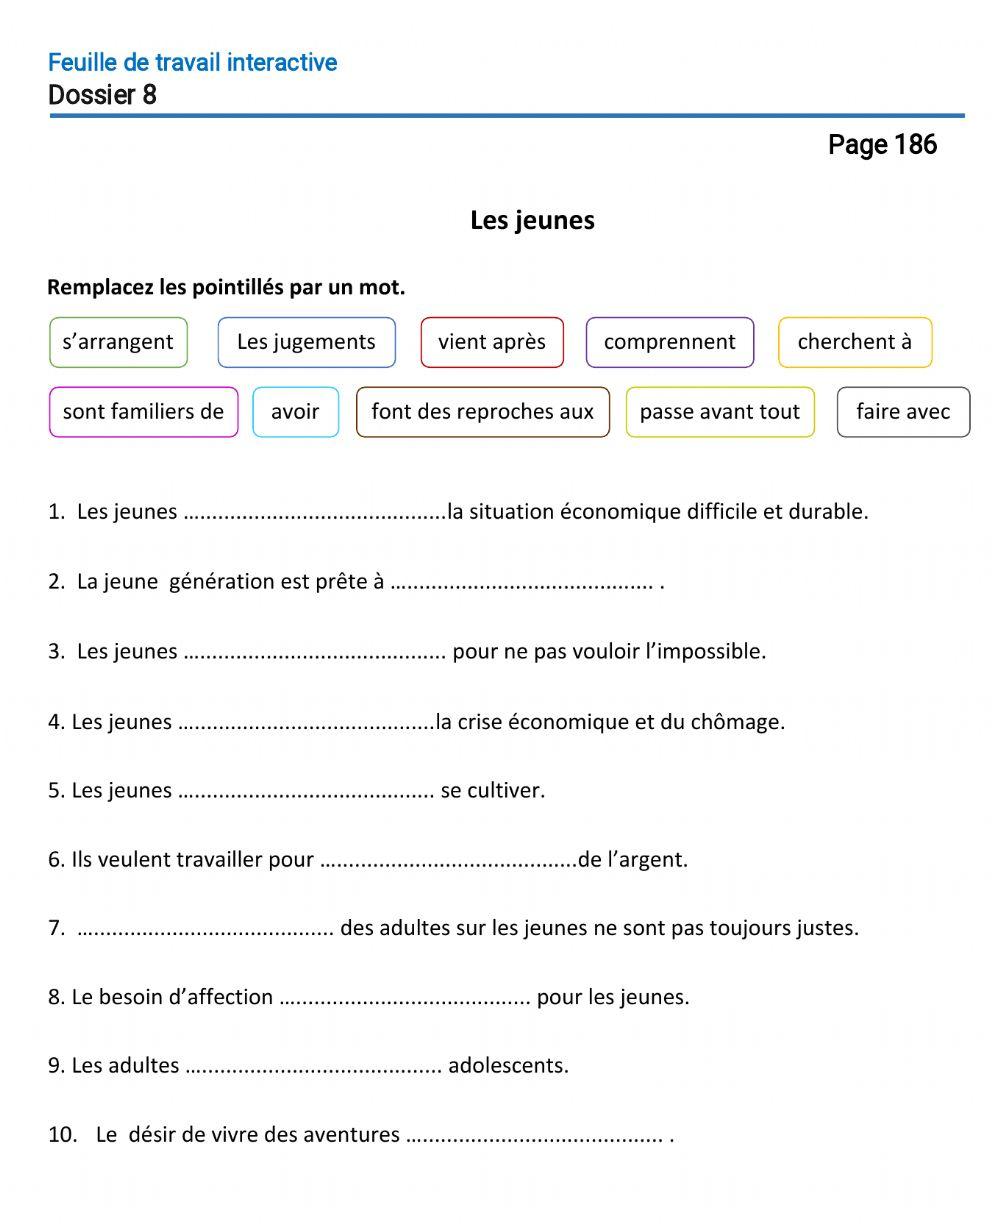 Le français-10 (повыш.)-Dossier 8-Page 186